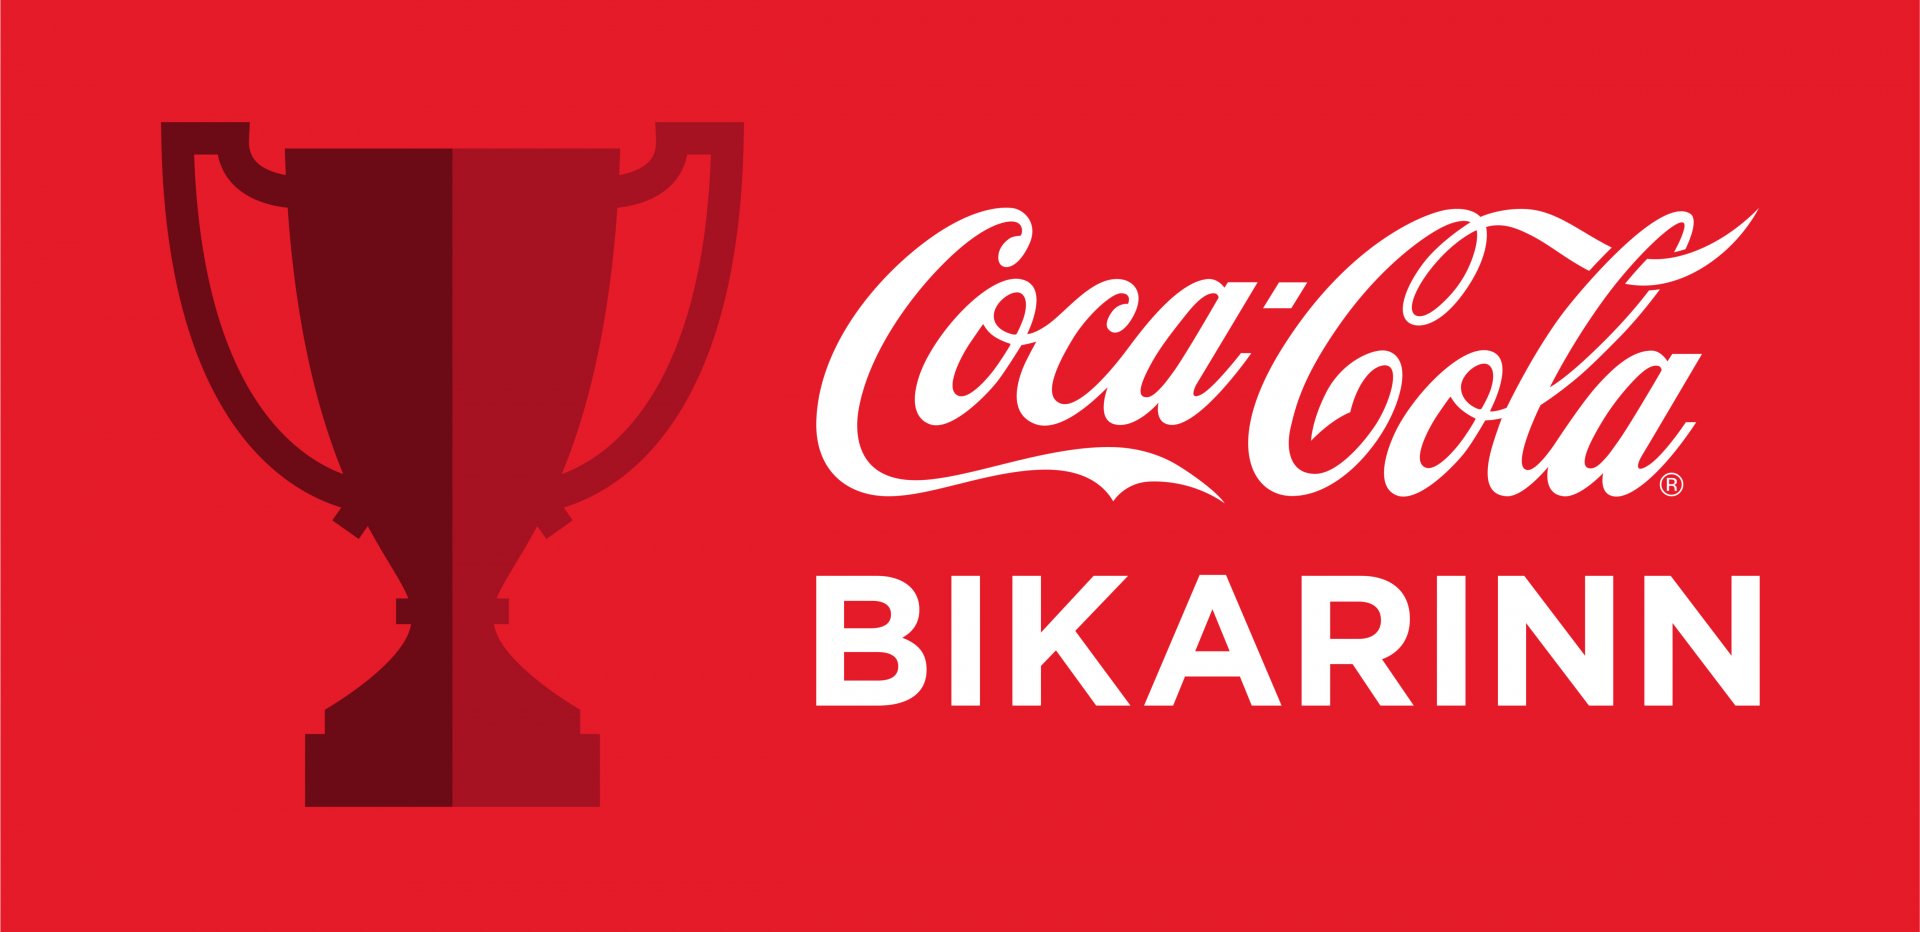 Coca Cola Bikarinn Bikarkeppni HSÍ